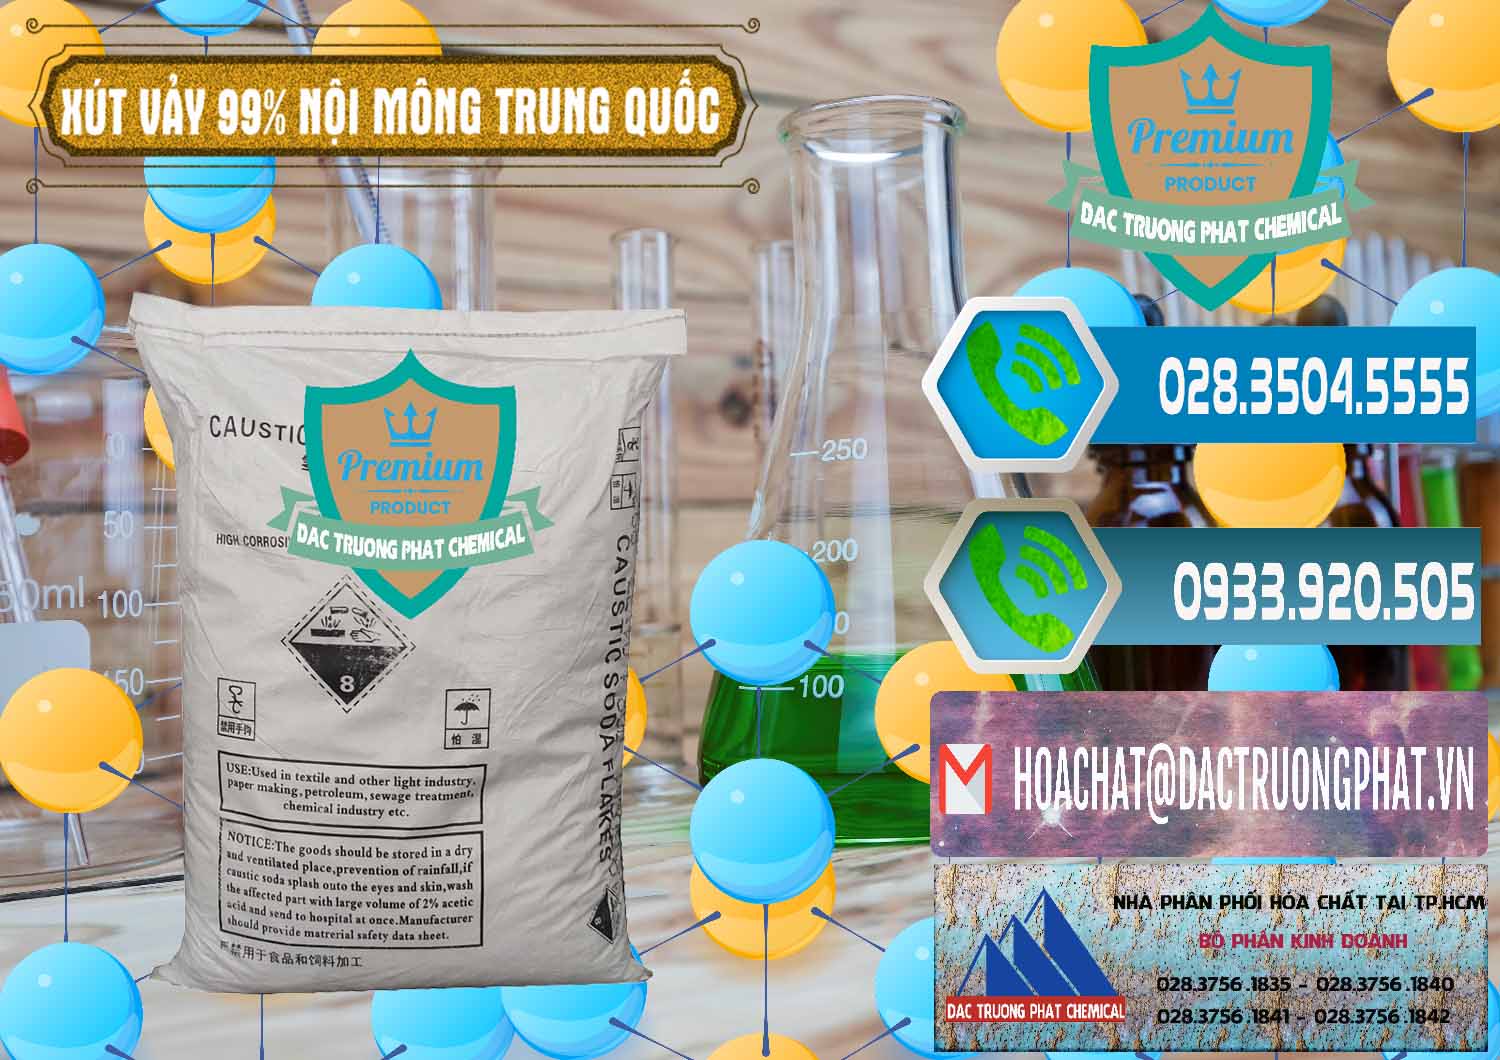 Cty chuyên phân phối ( bán ) Xút Vảy - NaOH Vảy 99% Nội Mông Trung Quốc China - 0228 - Chuyên cung cấp ( phân phối ) hóa chất tại TP.HCM - congtyhoachat.net